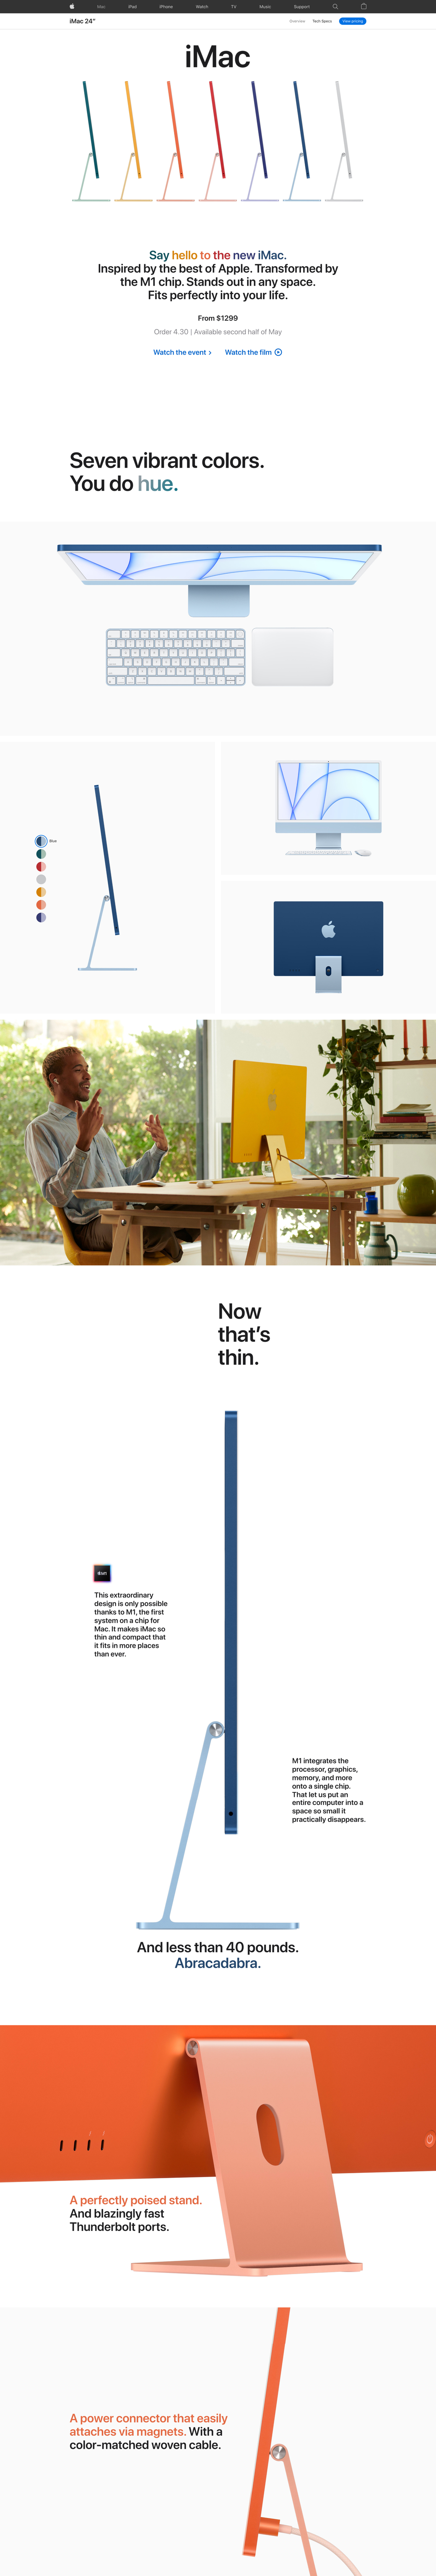 苹果24英寸iMac网页设计